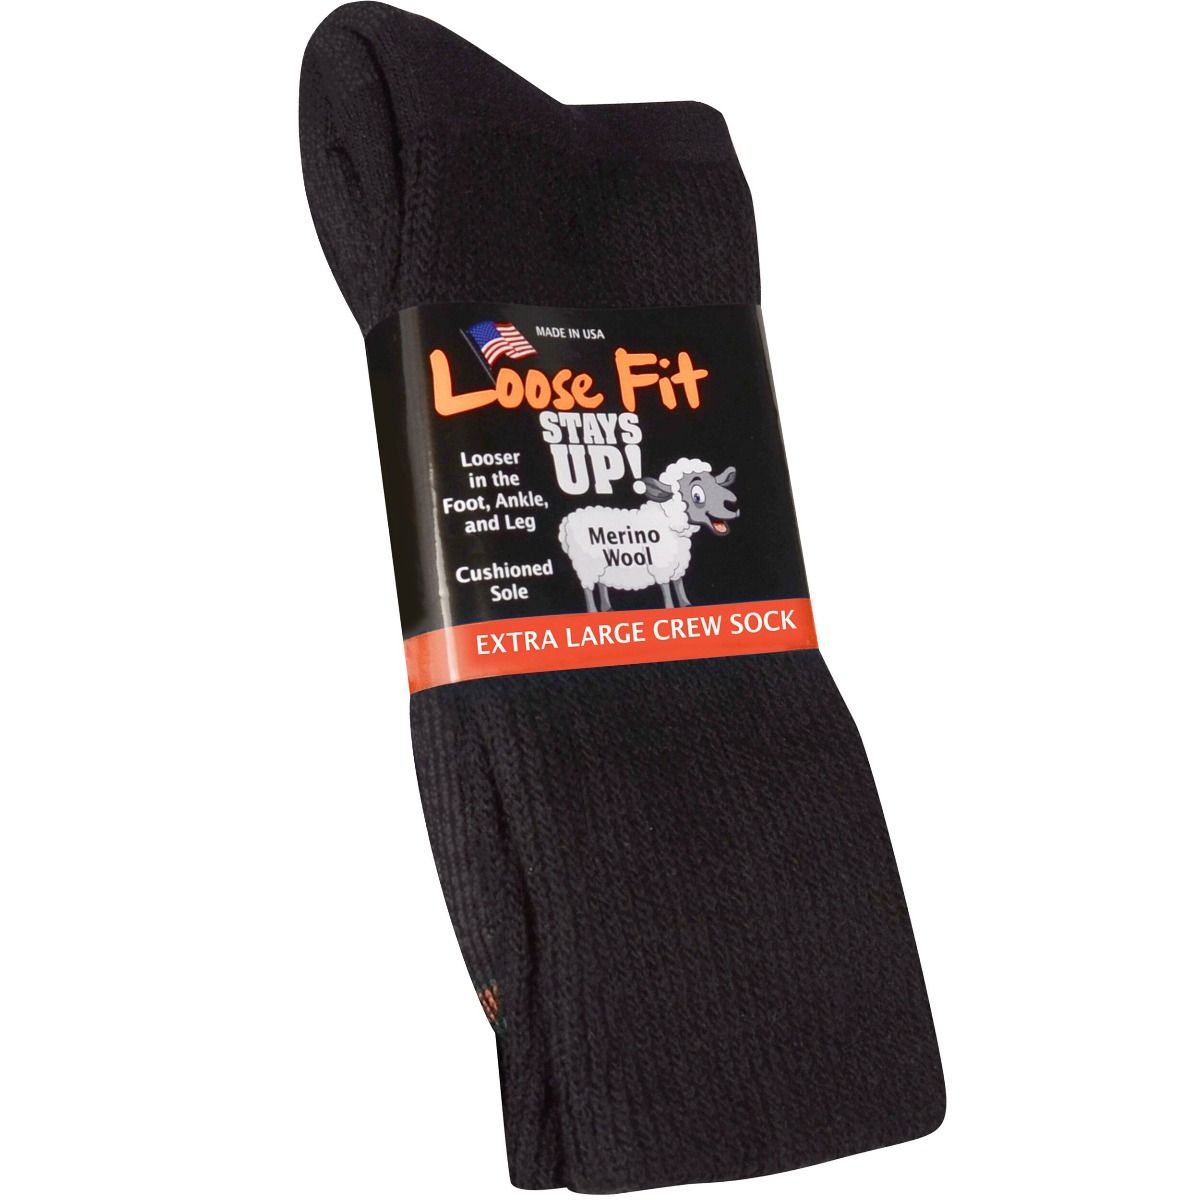 Hurricane girl Assets Loose Fit Solid Merino Wool Crew Socks to EEEEE - Black - Single Pair | Xl  Feet